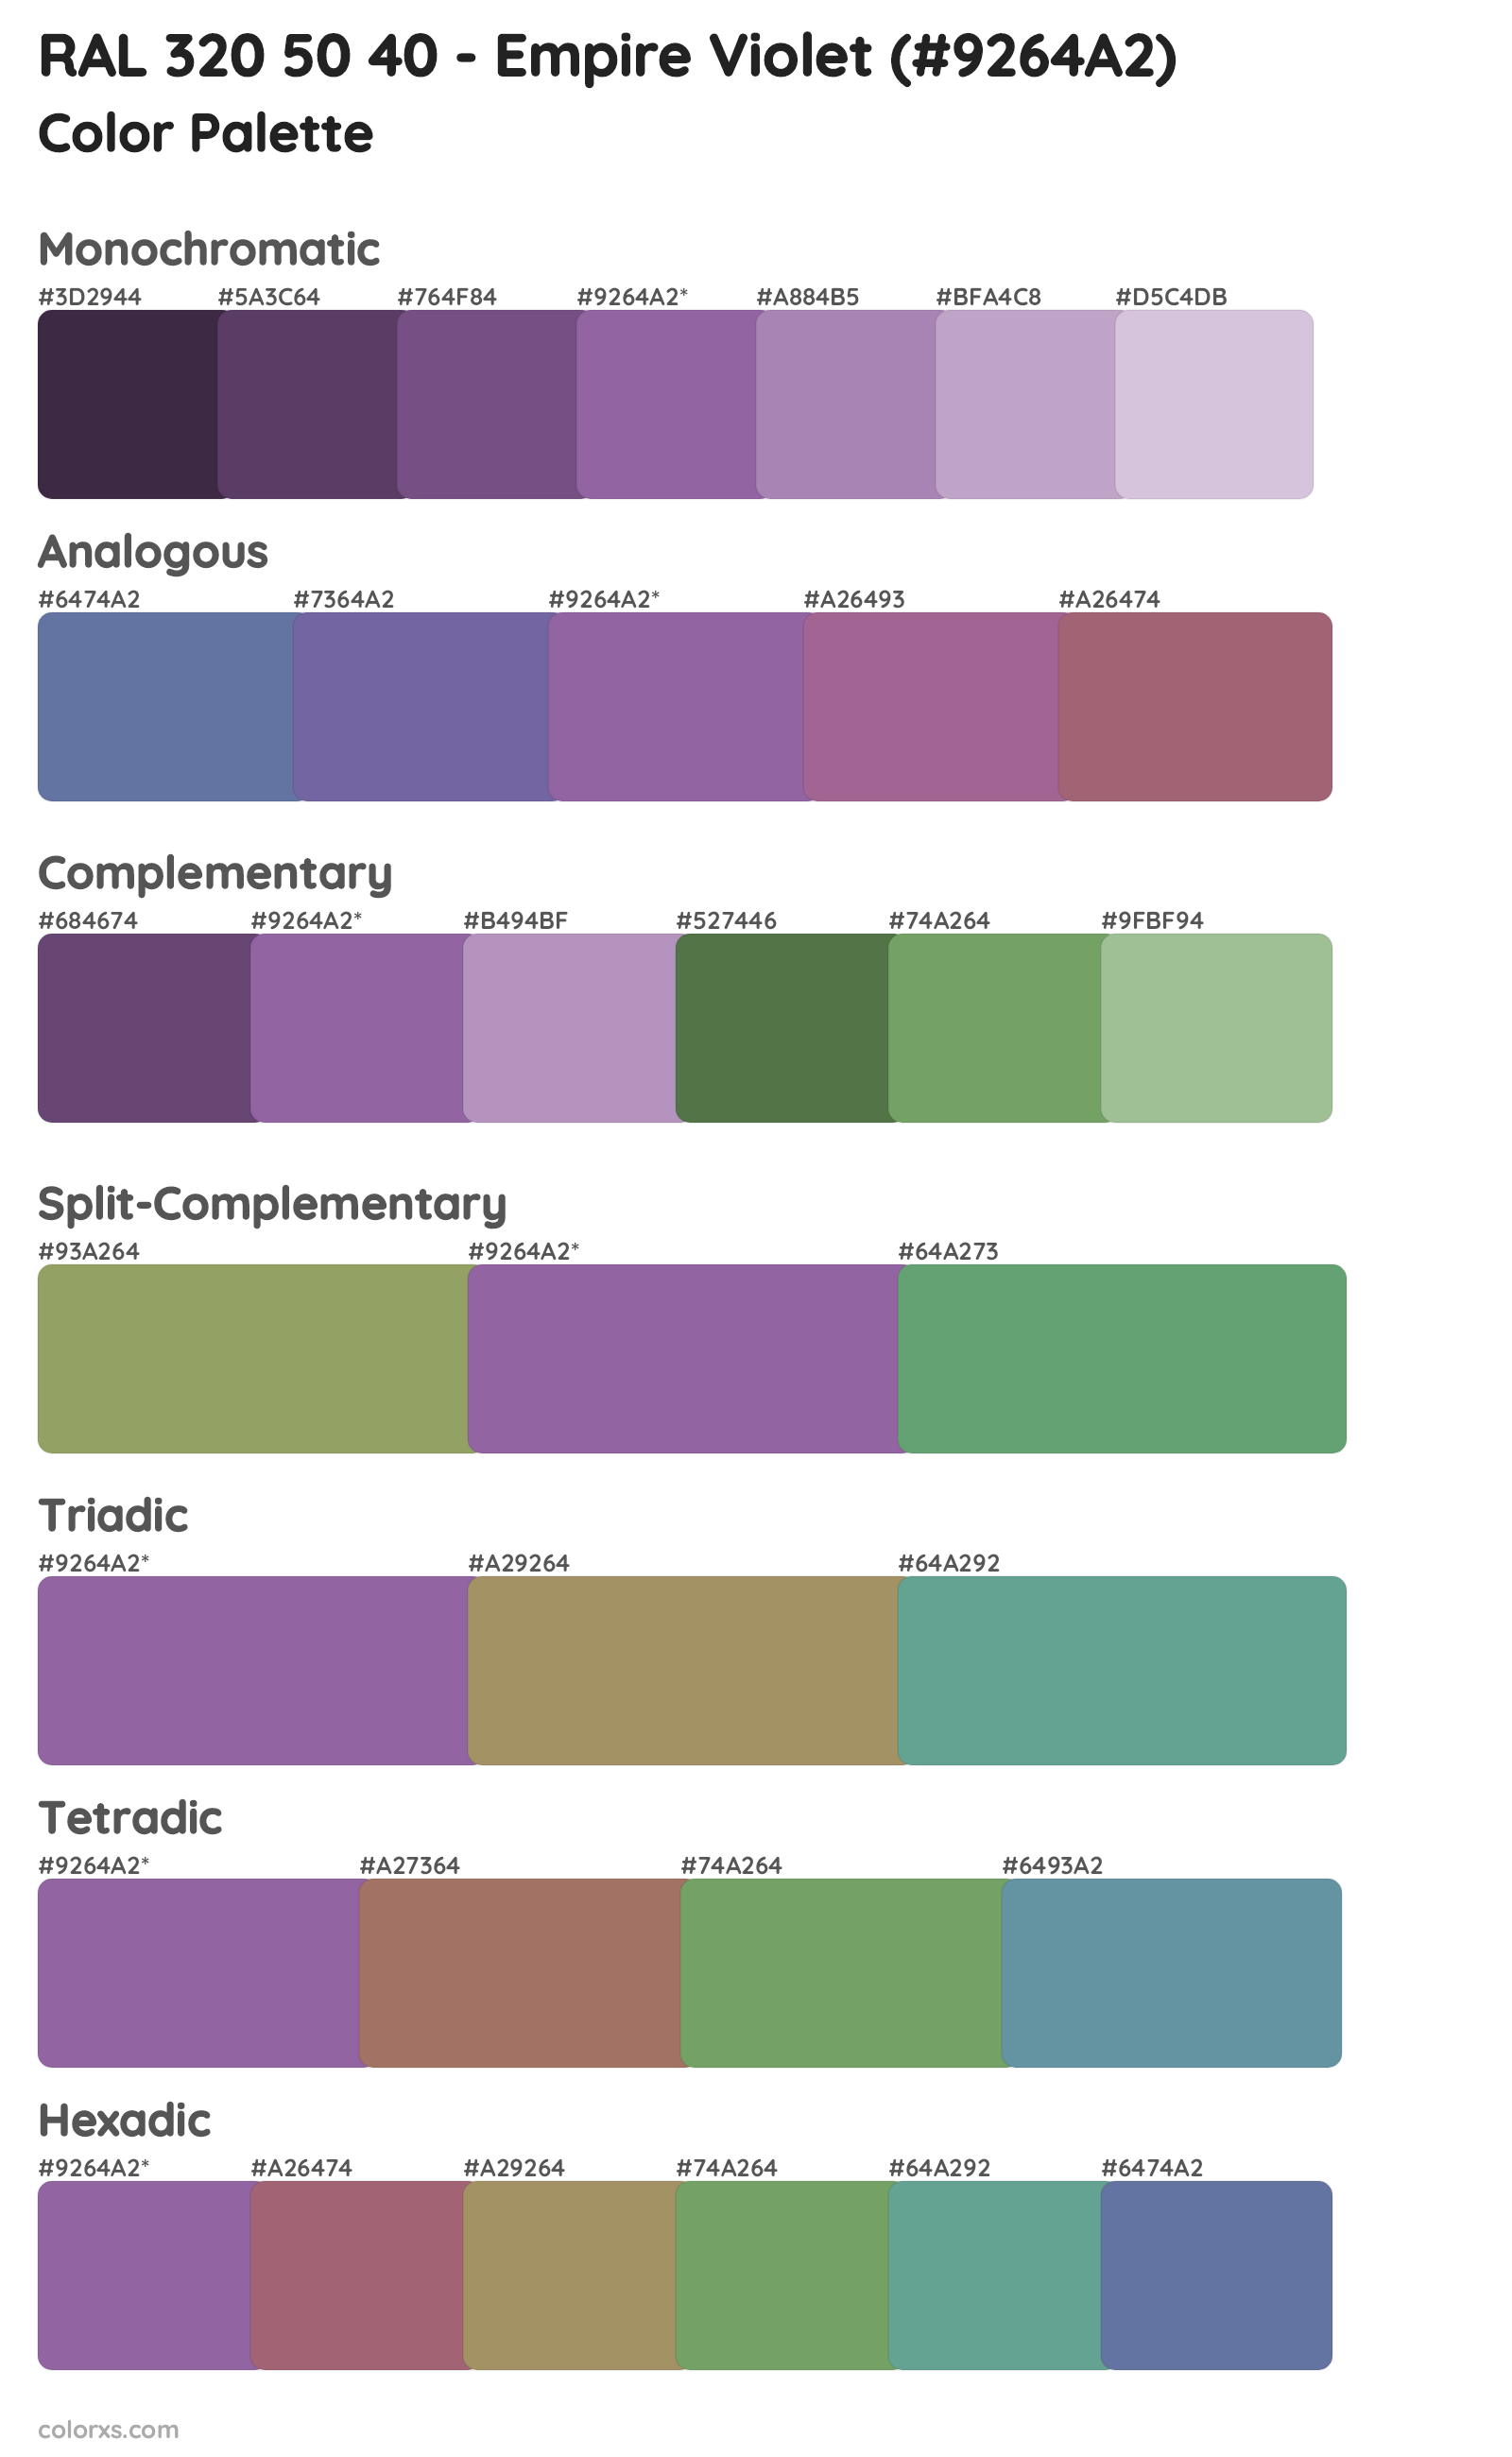 RAL 320 50 40 - Empire Violet Color Scheme Palettes